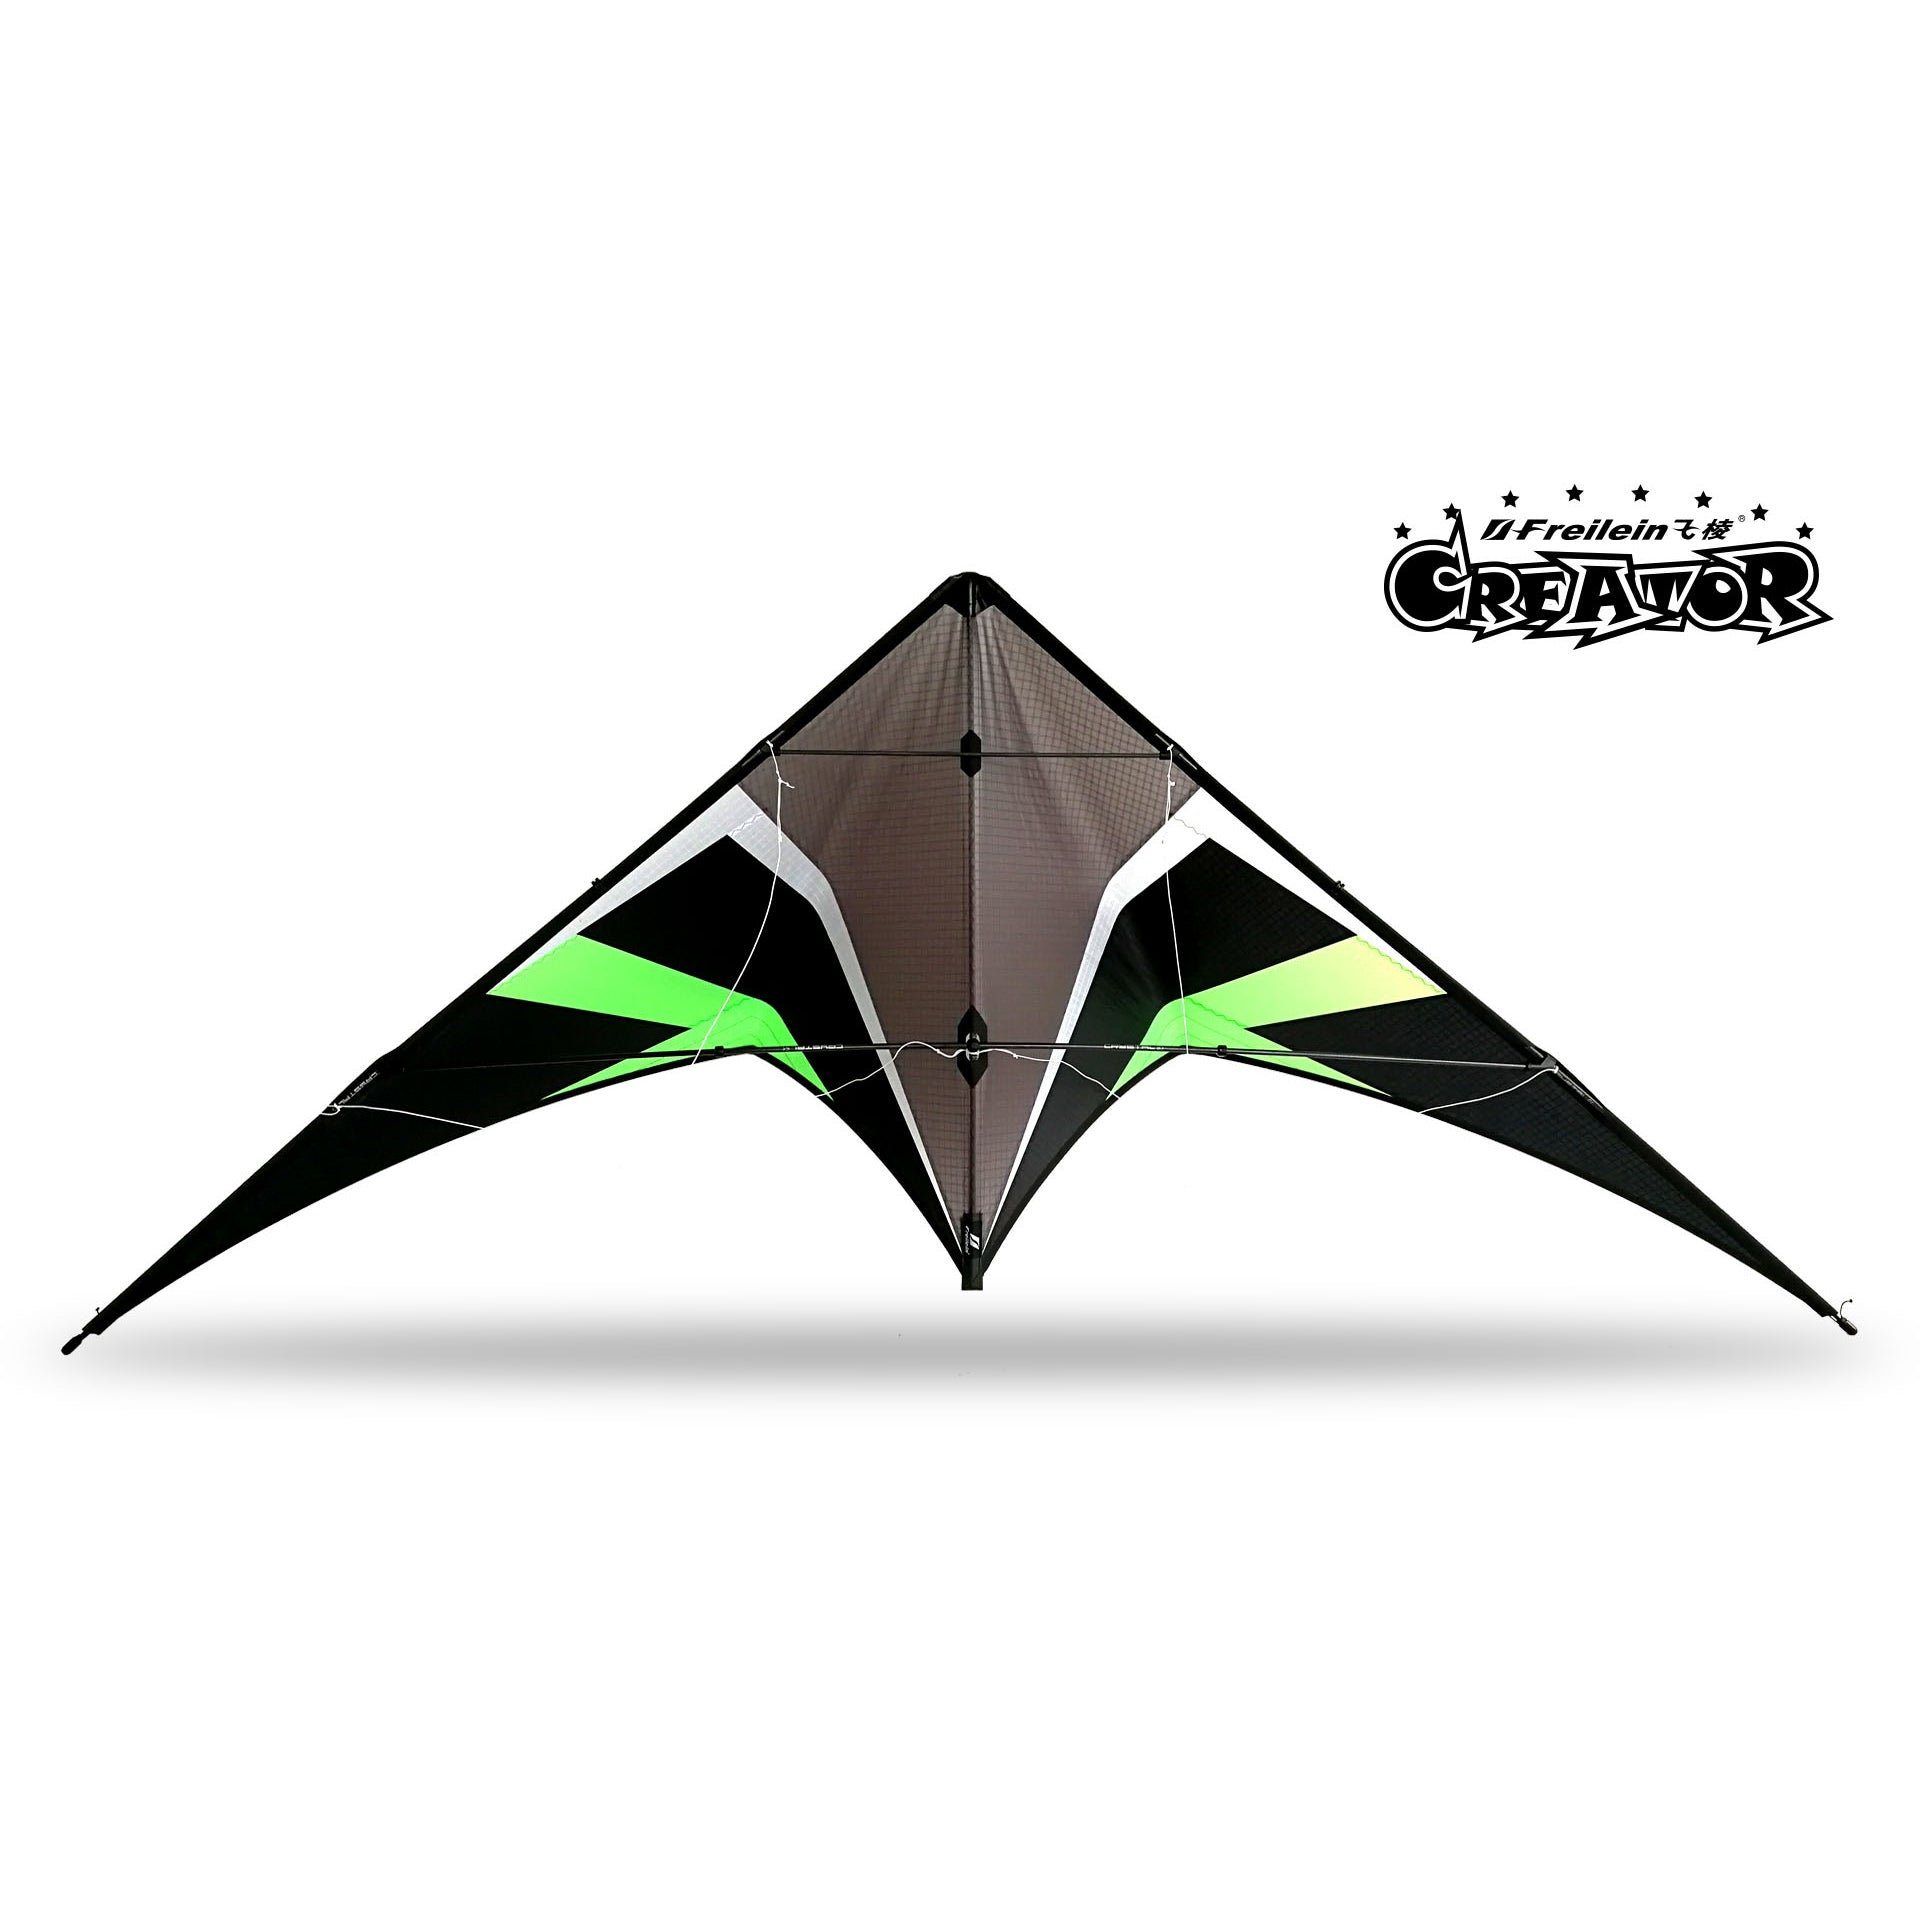 Creator III Dual Line Stunt Kite - 218cm